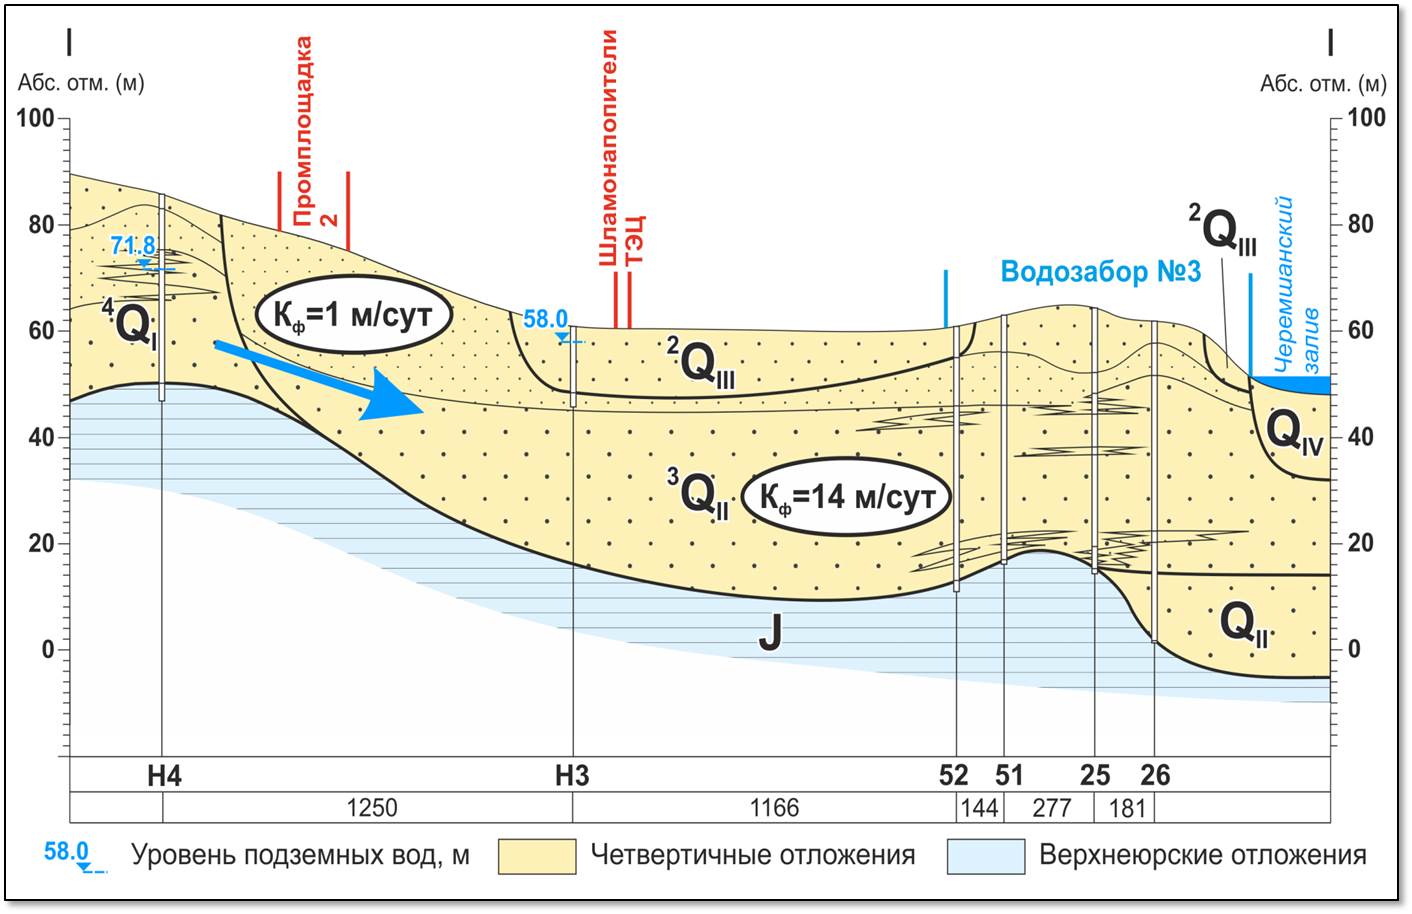 Анализ подземных вод. Геологический разрез грунтовых вод. Геолого-гидрогеологический разрез. Схематический гидрогеологический разрез. Подземные воды на геологическом разрезе.